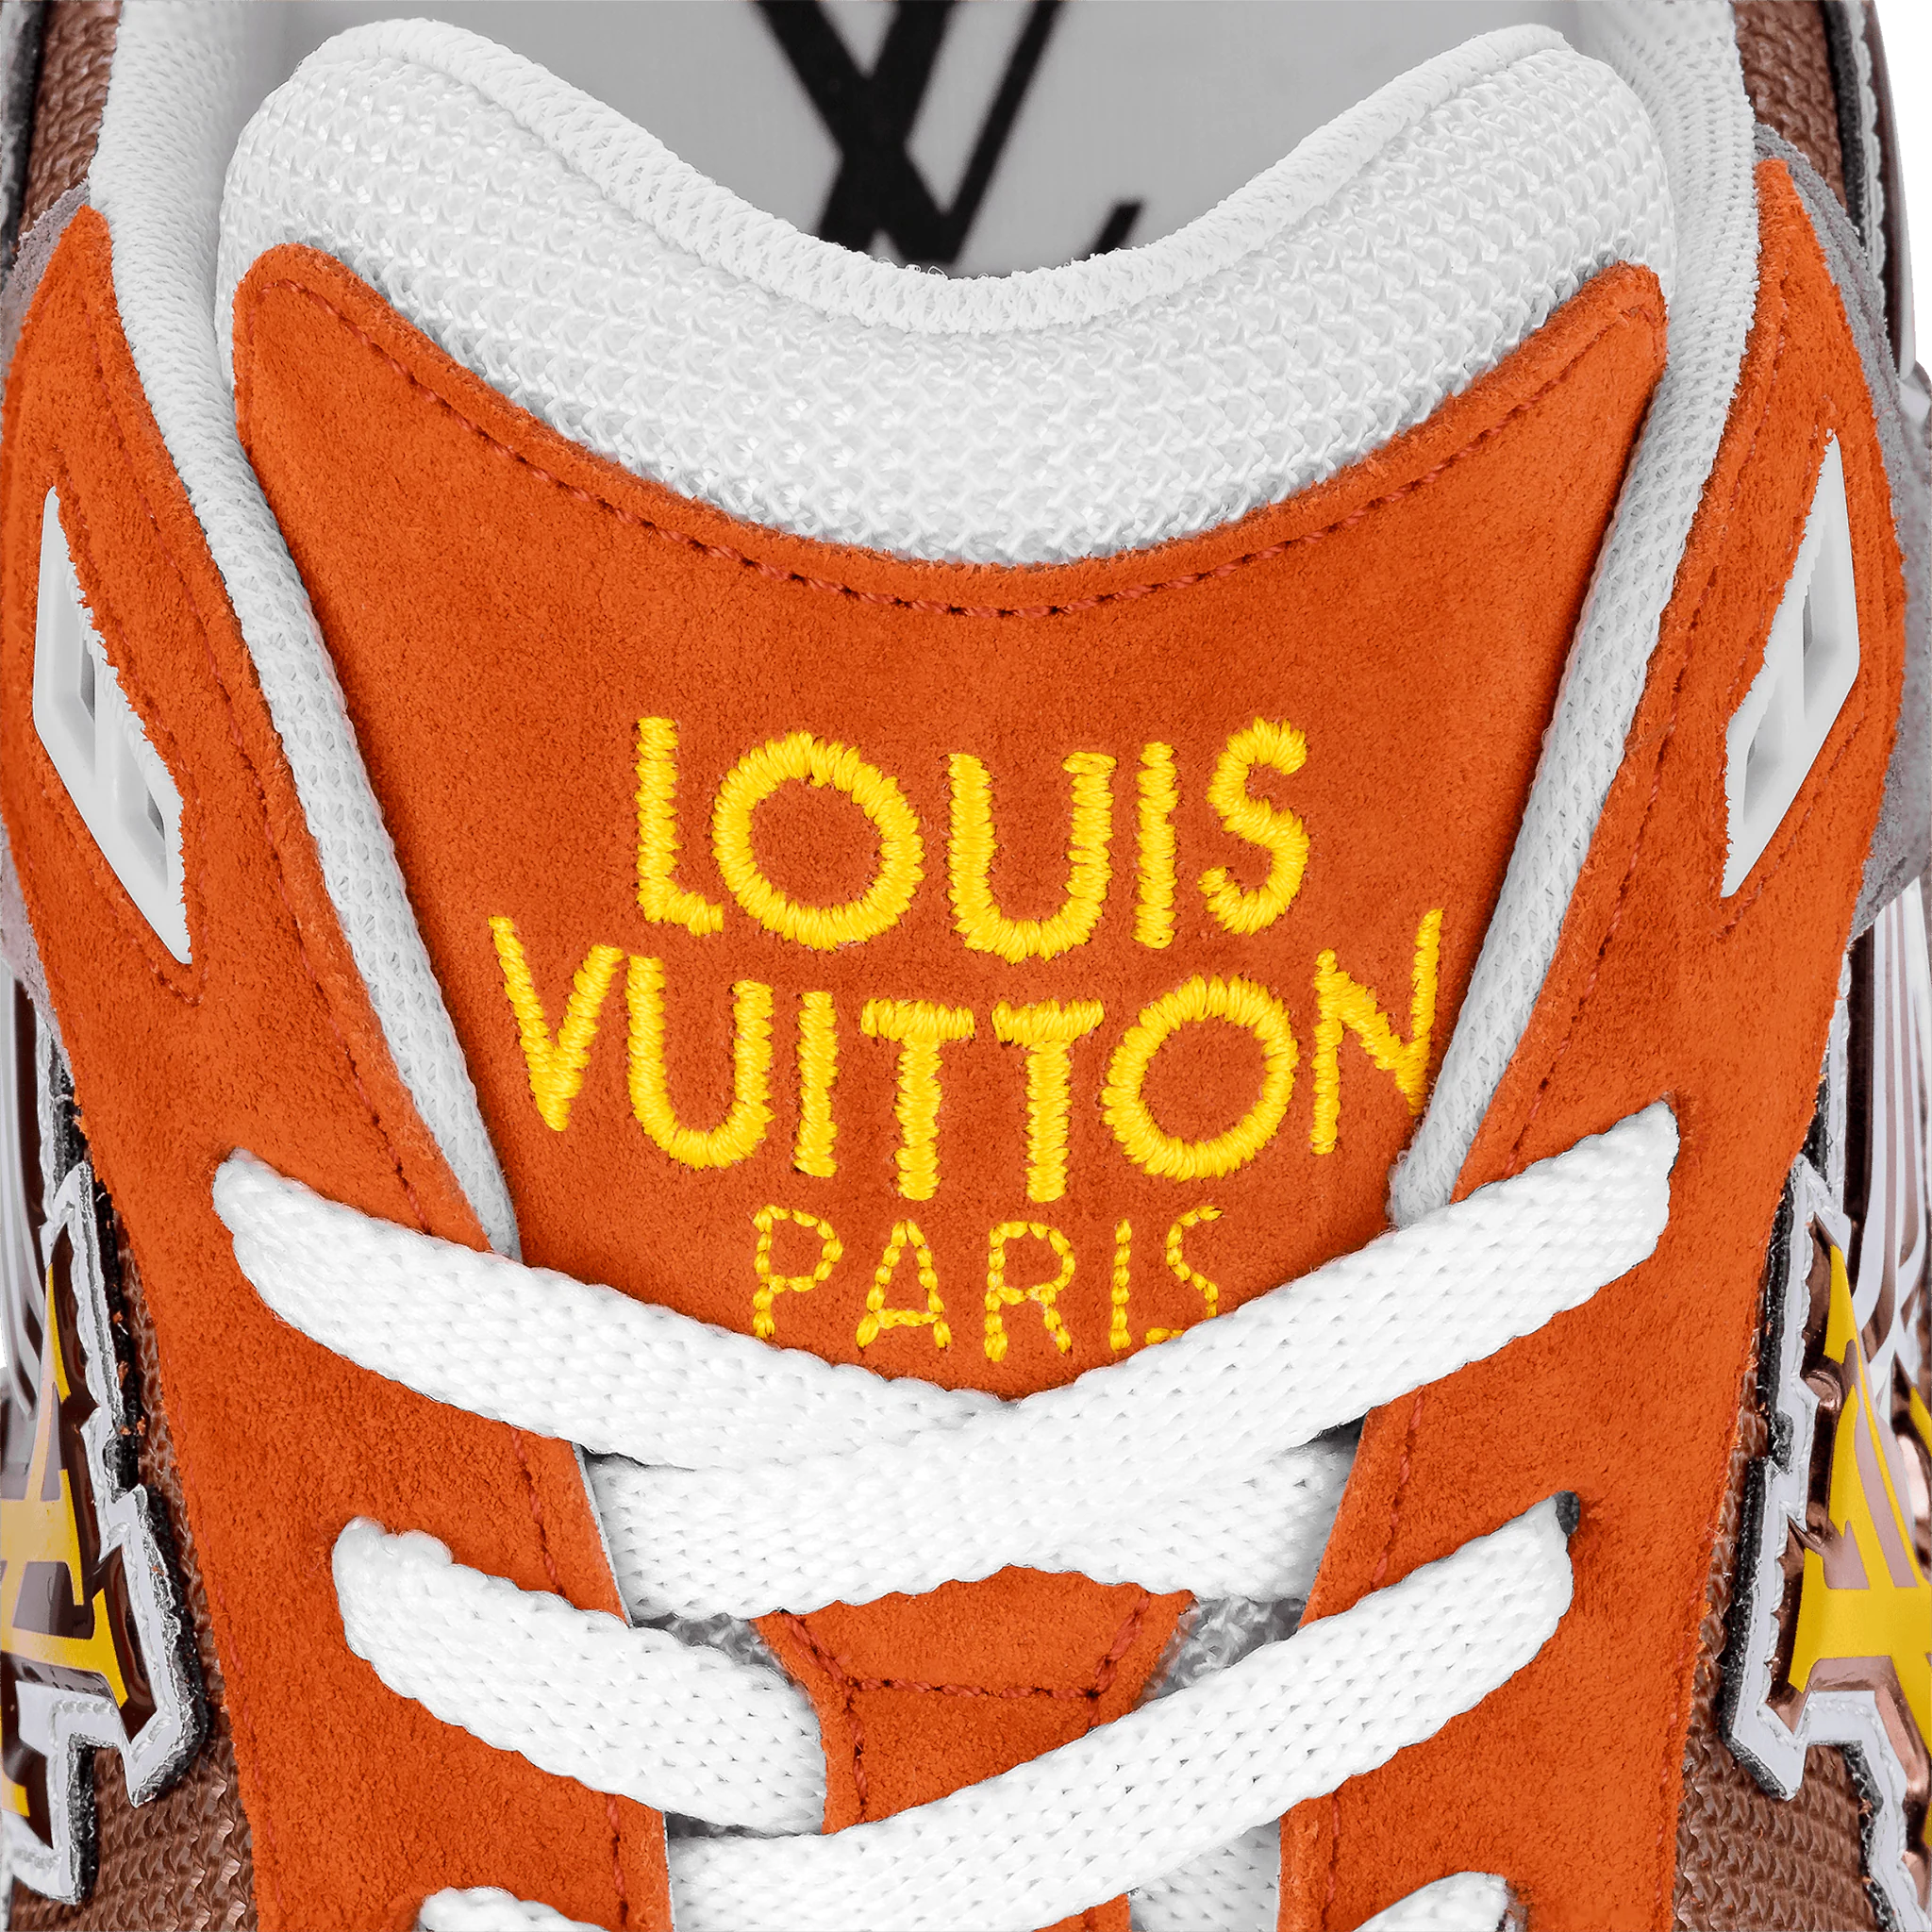 Louis Vuitton  Run Away Sneaker – sapphira